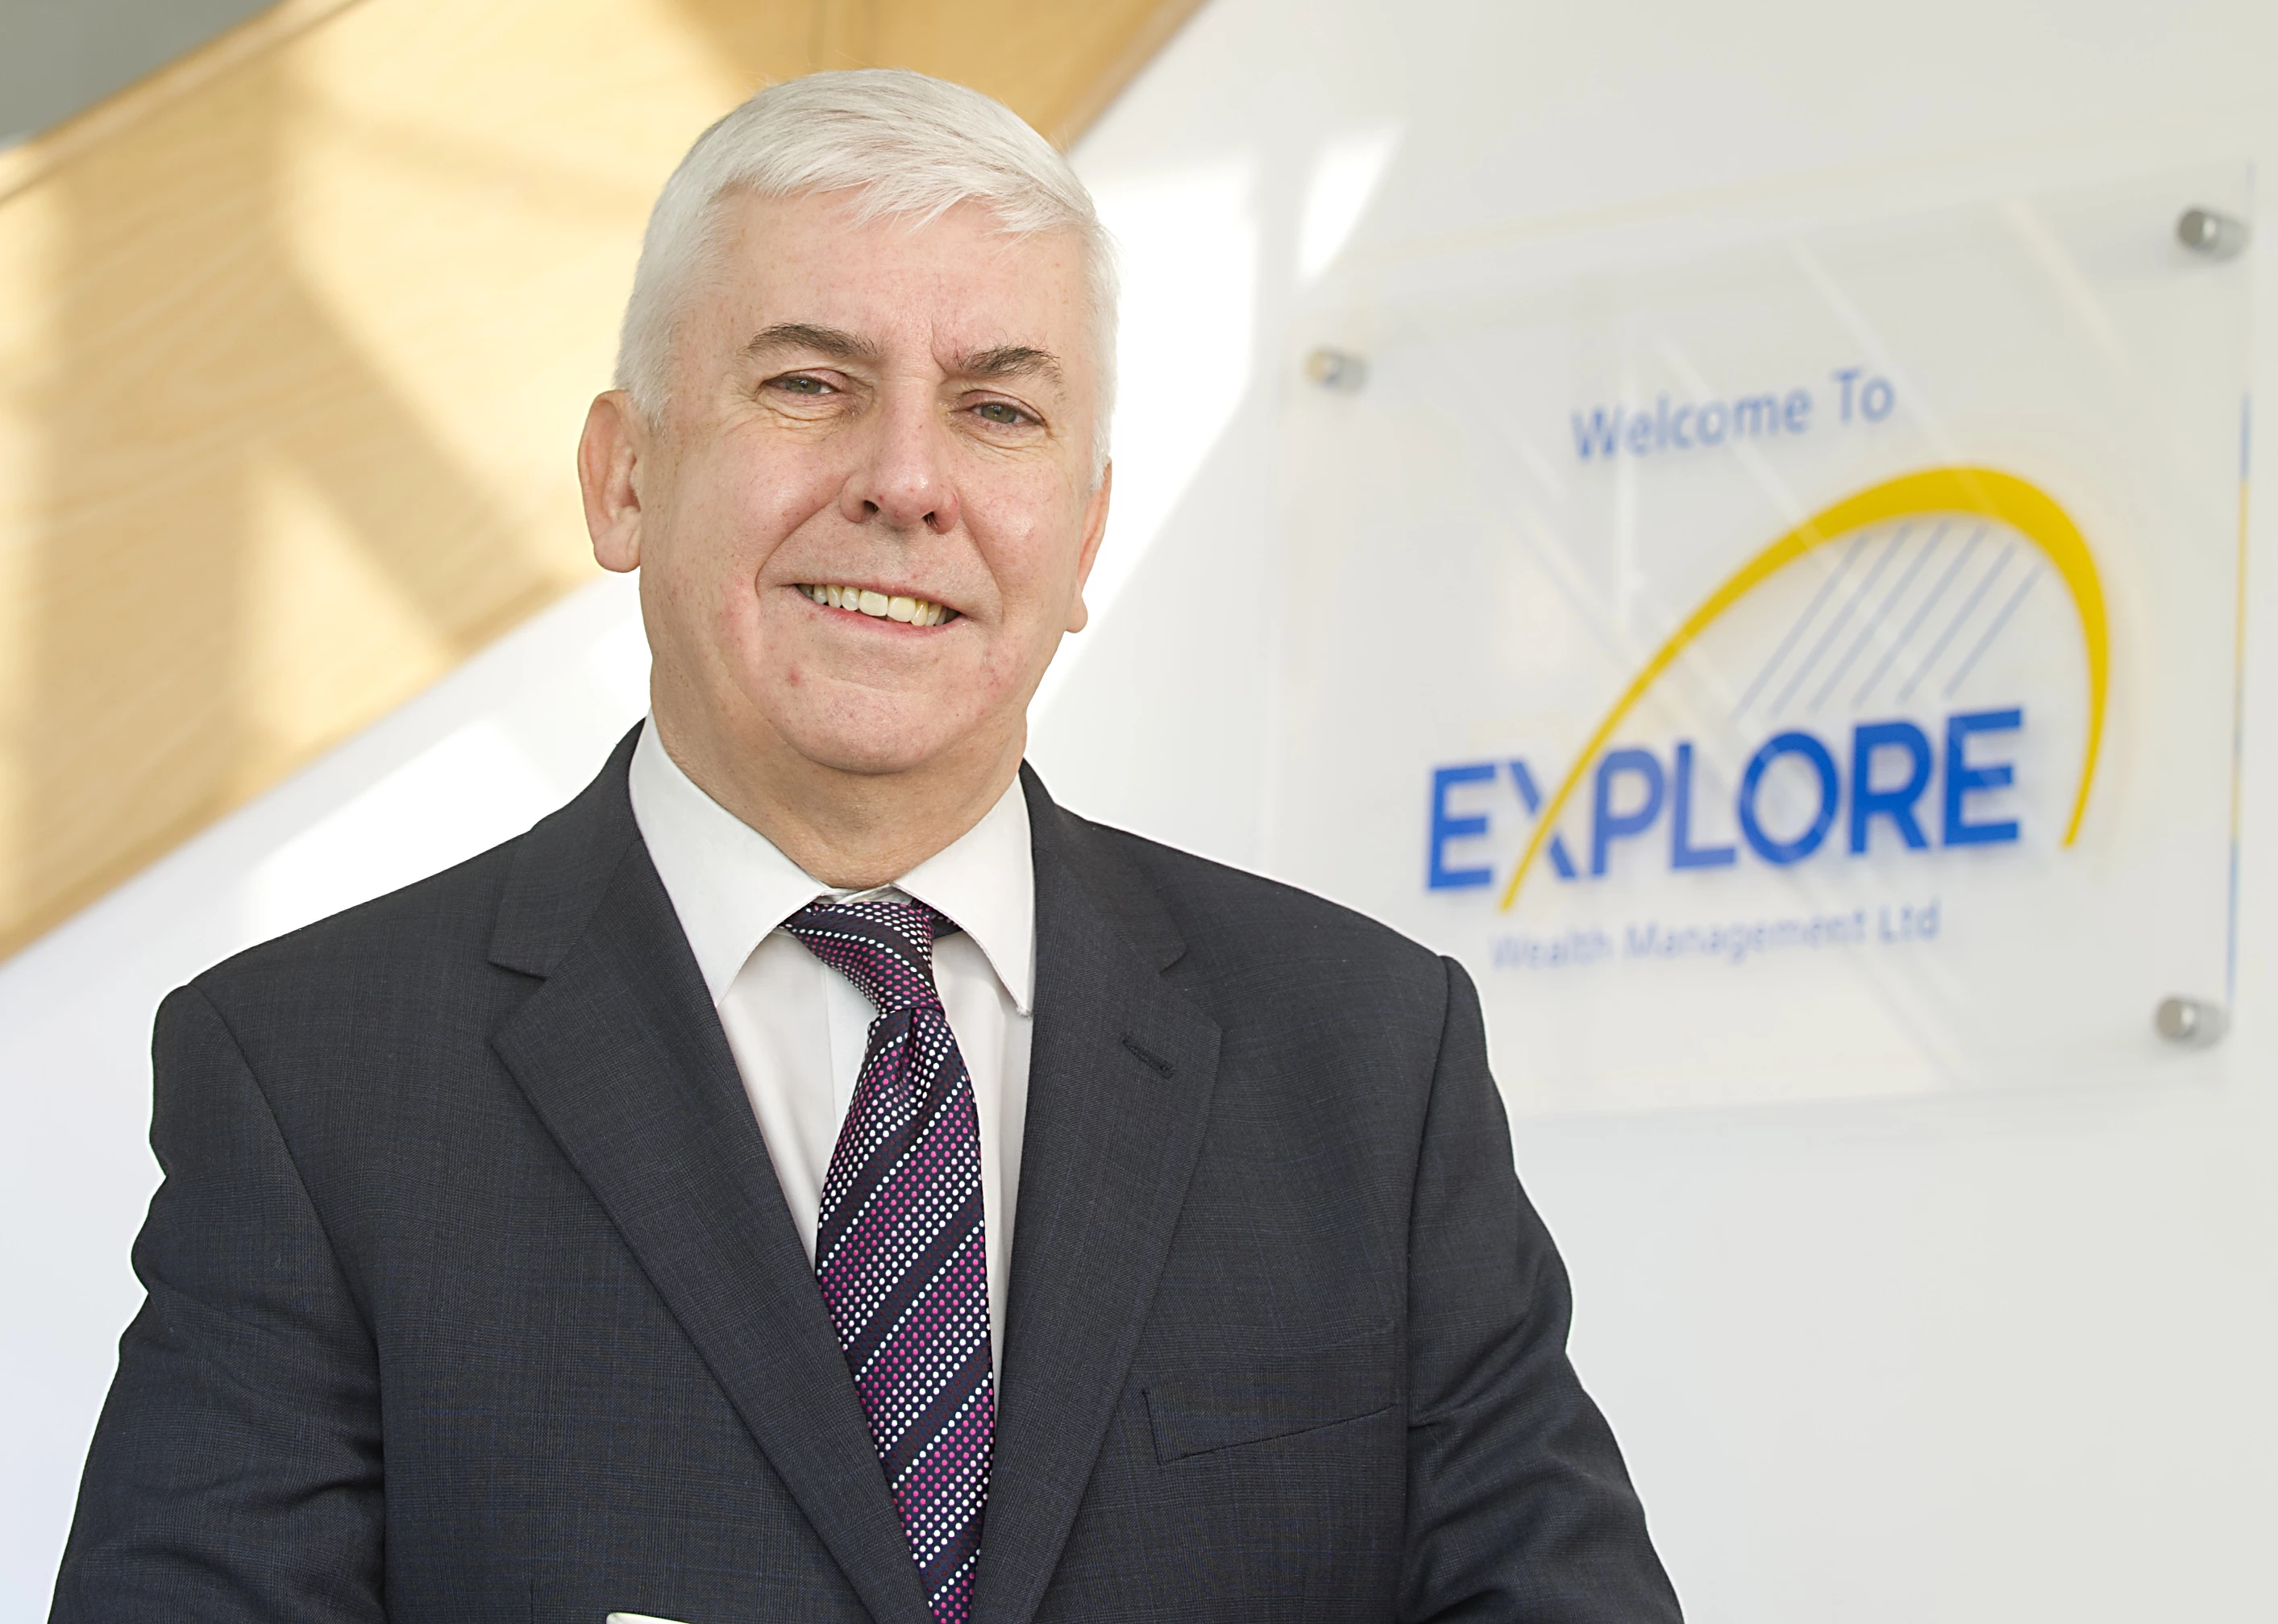 Stephen Sumner, Managing Director at Explore Wealth Management